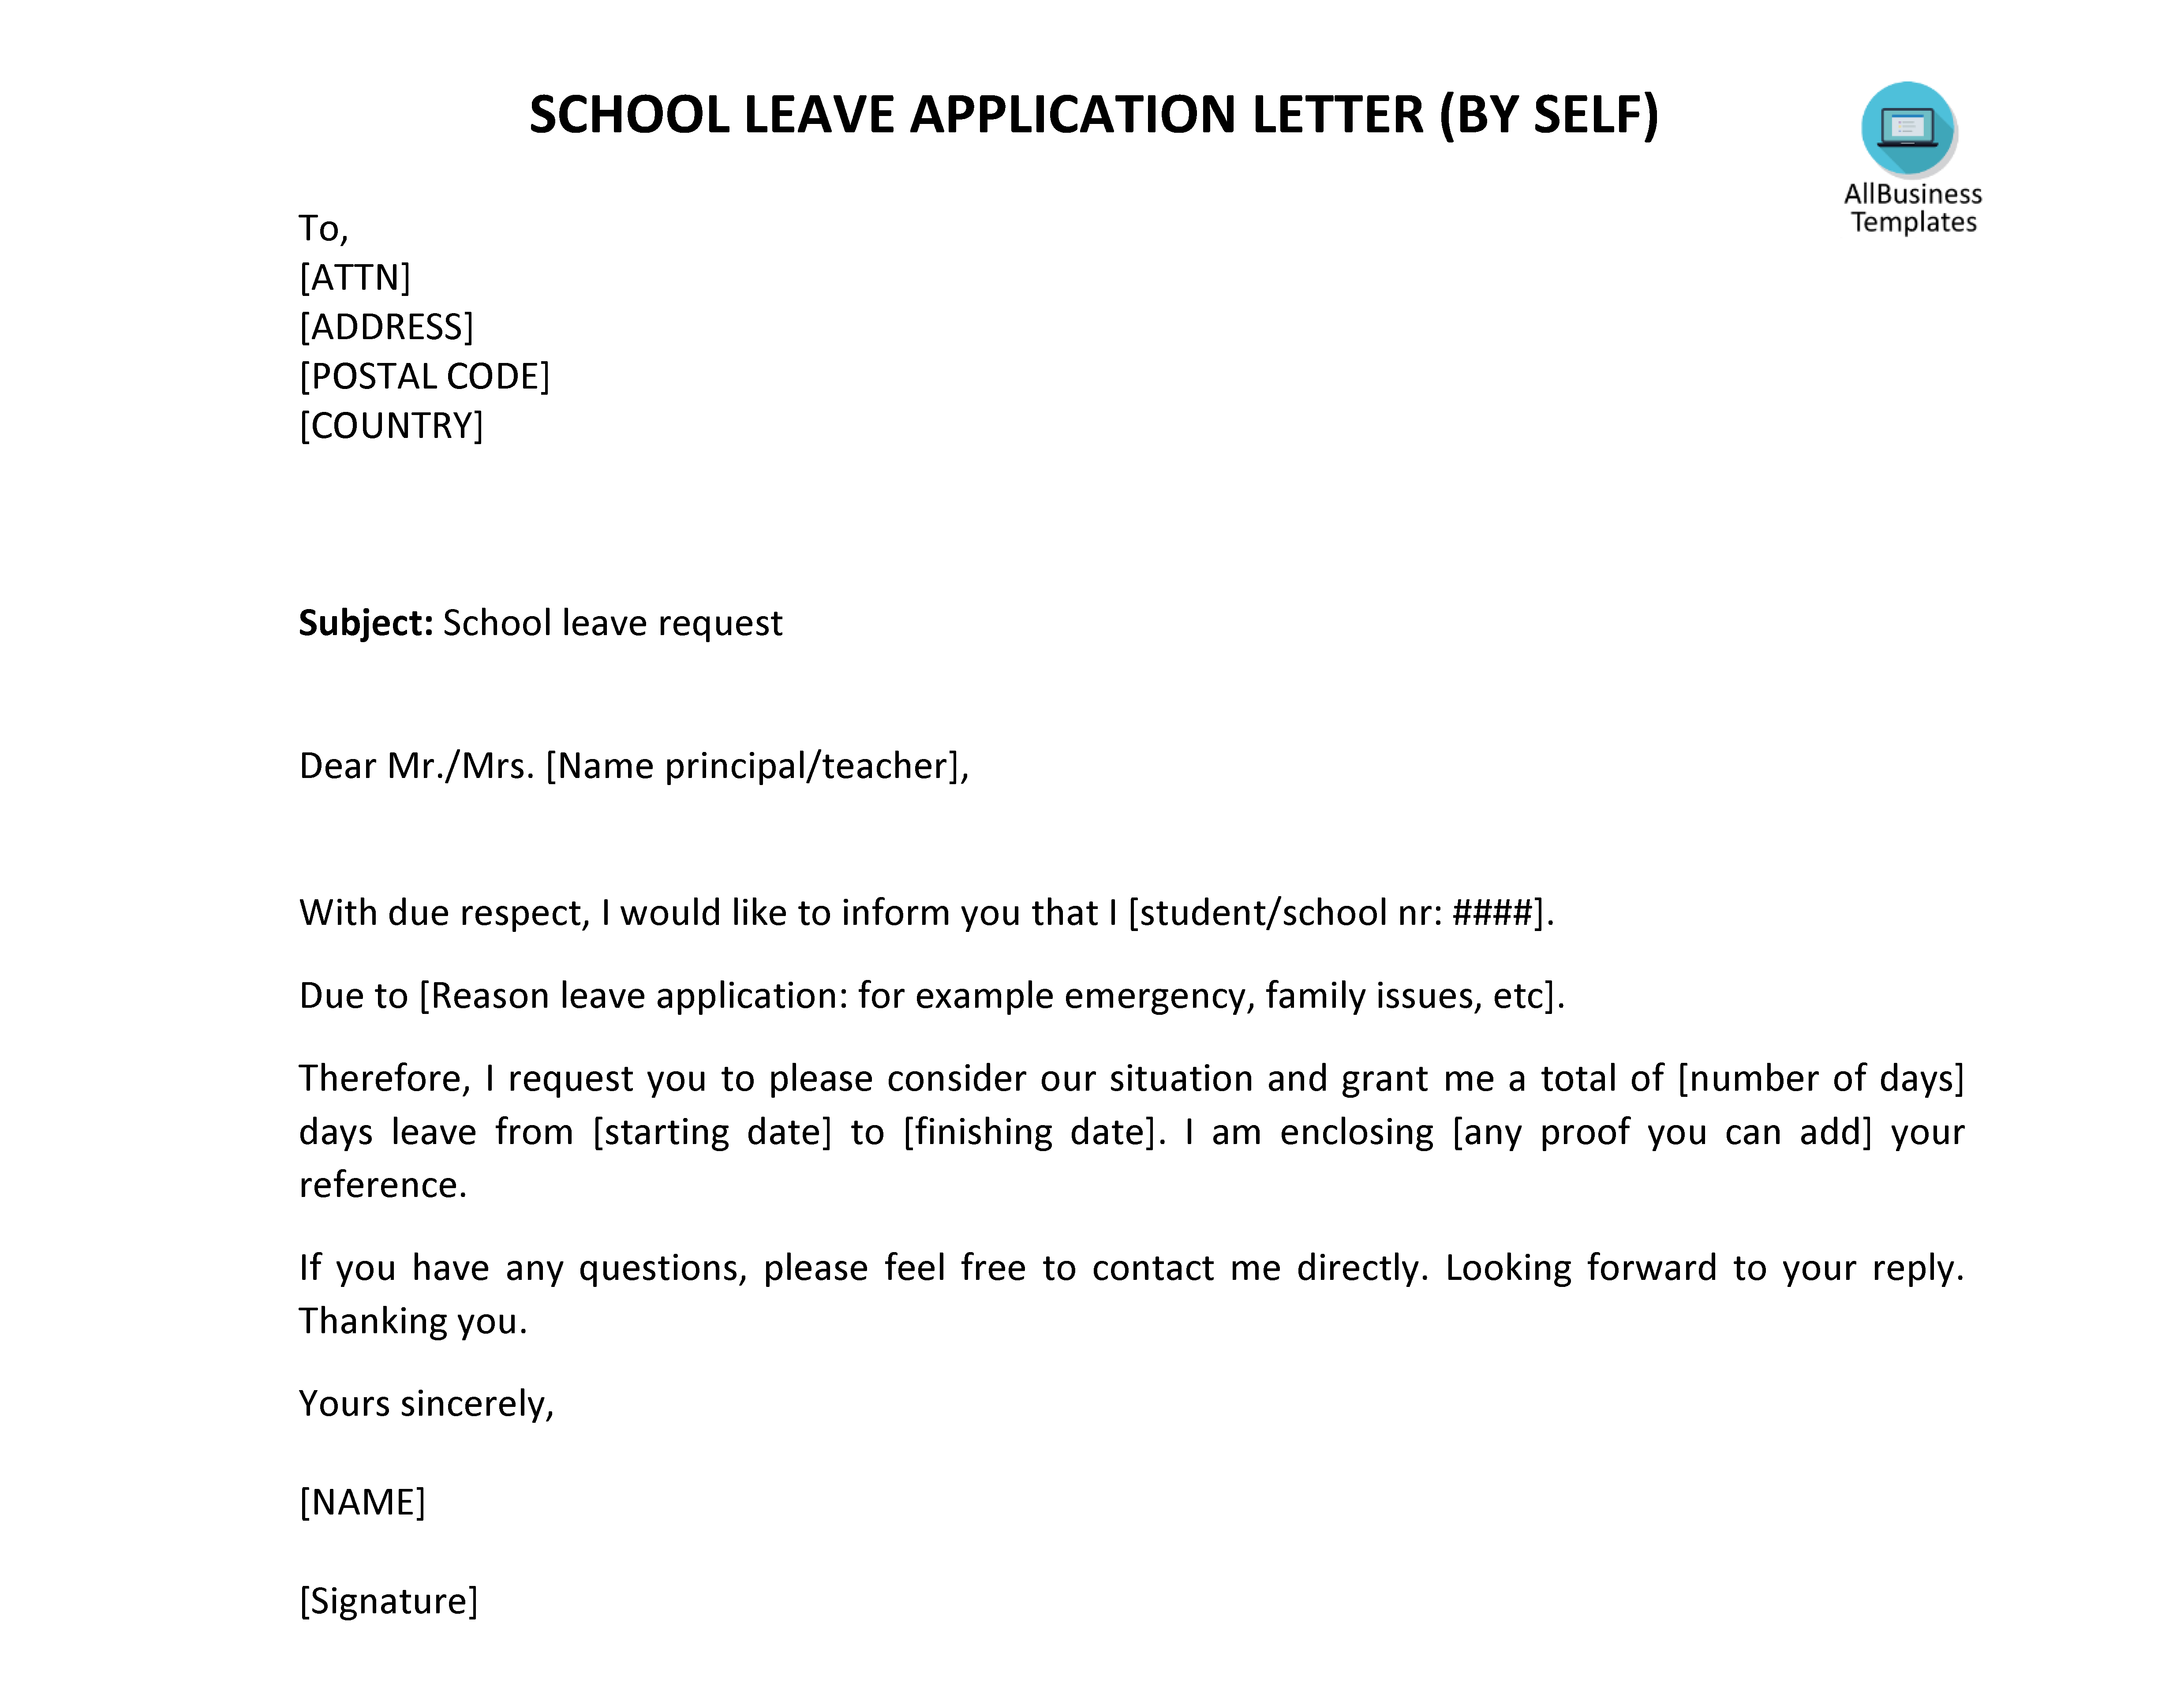 免费 School Leave Letter By Self | 样本文件在 allbusinesstemplates.com